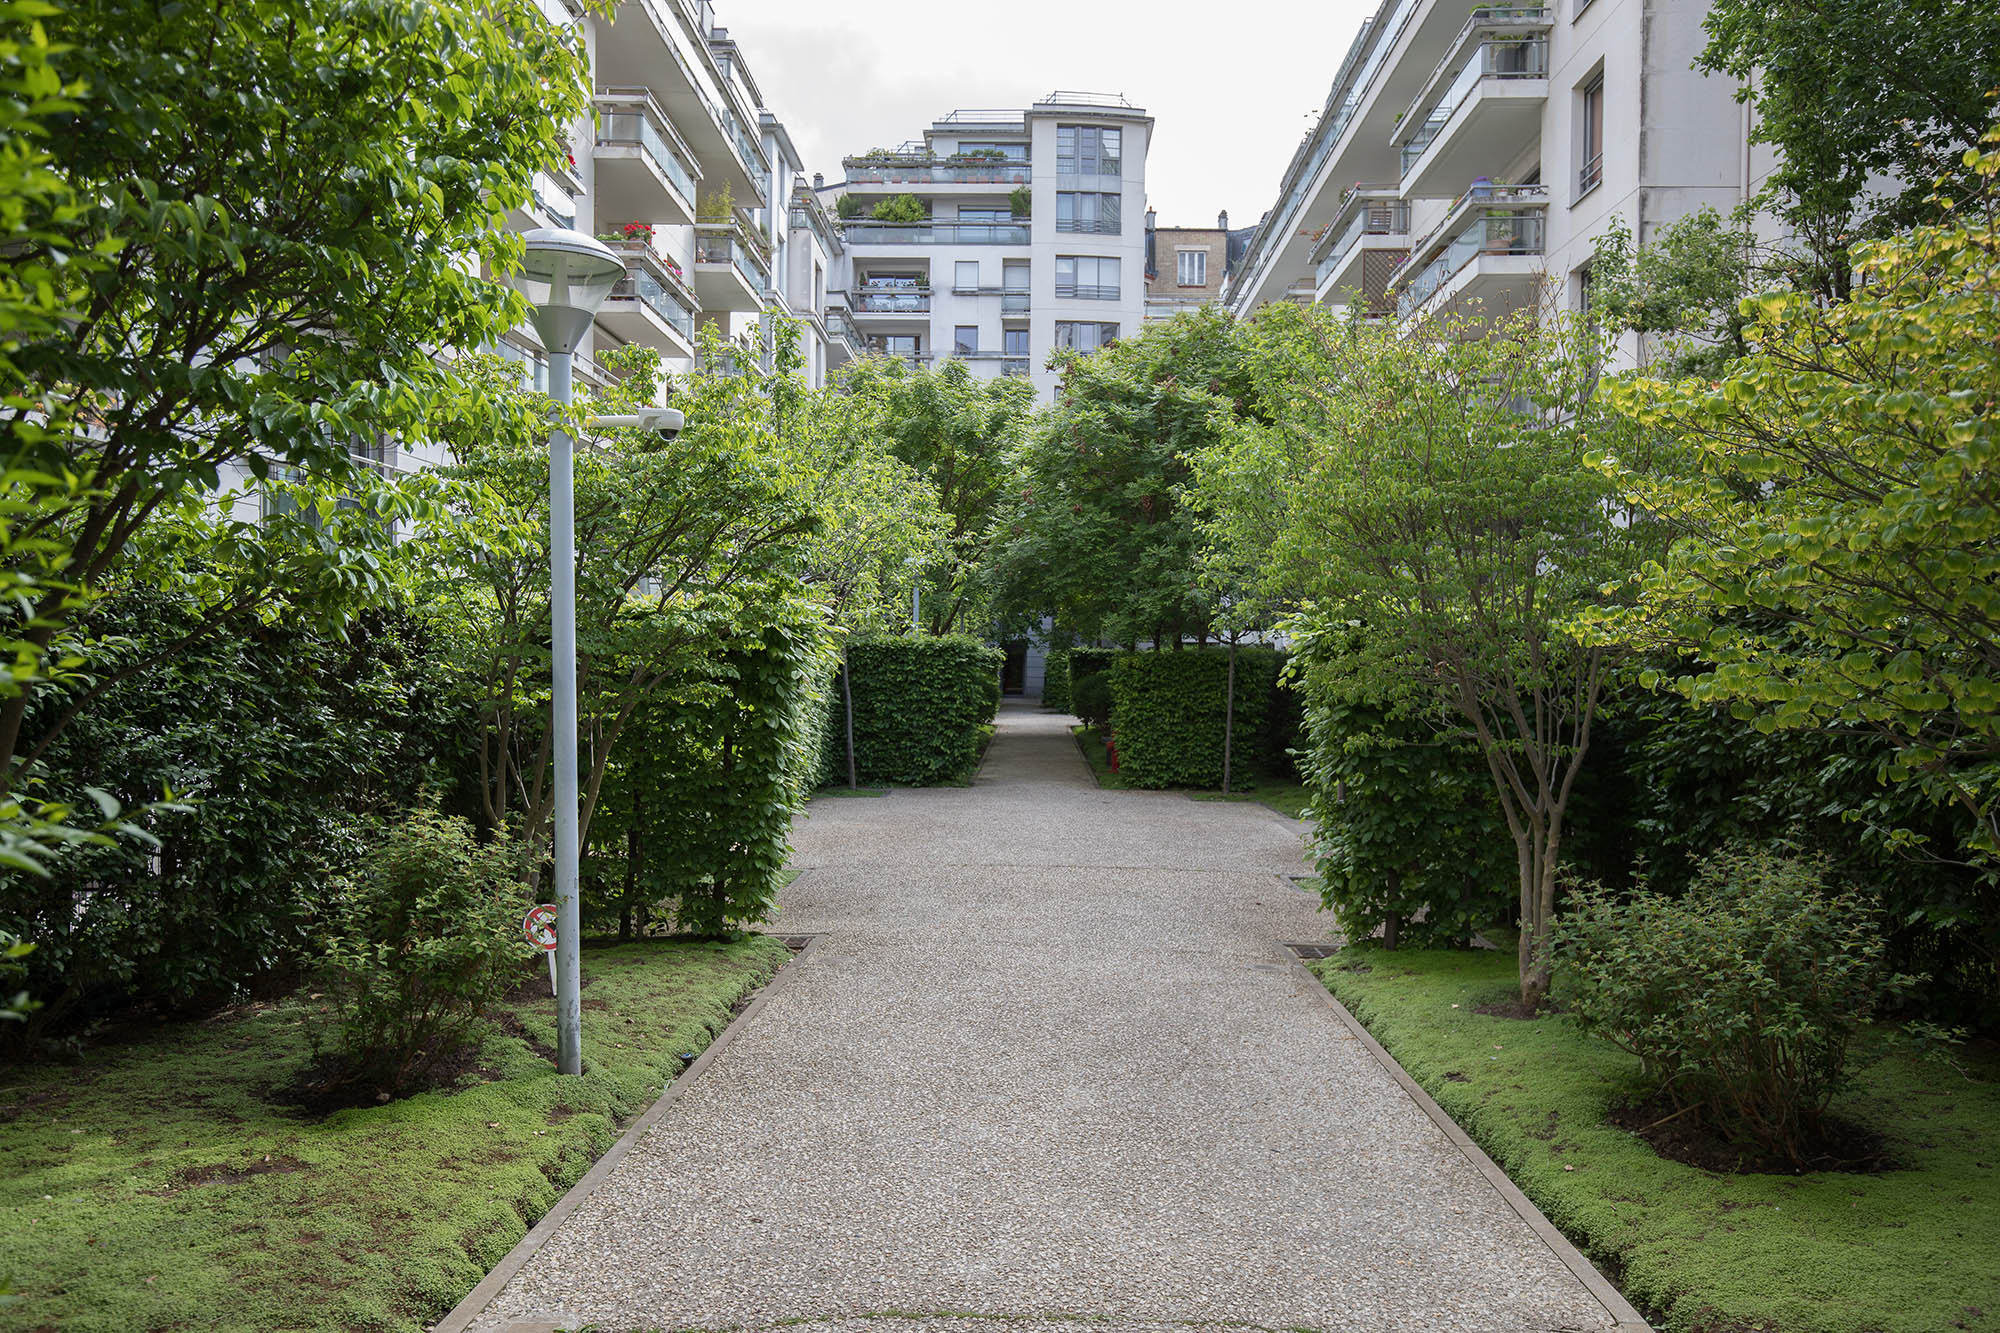 Appartement rez de jardin vente immeuble récent Javel Gabriel Riqueti 75015 Paris 15ème terrasse jardin